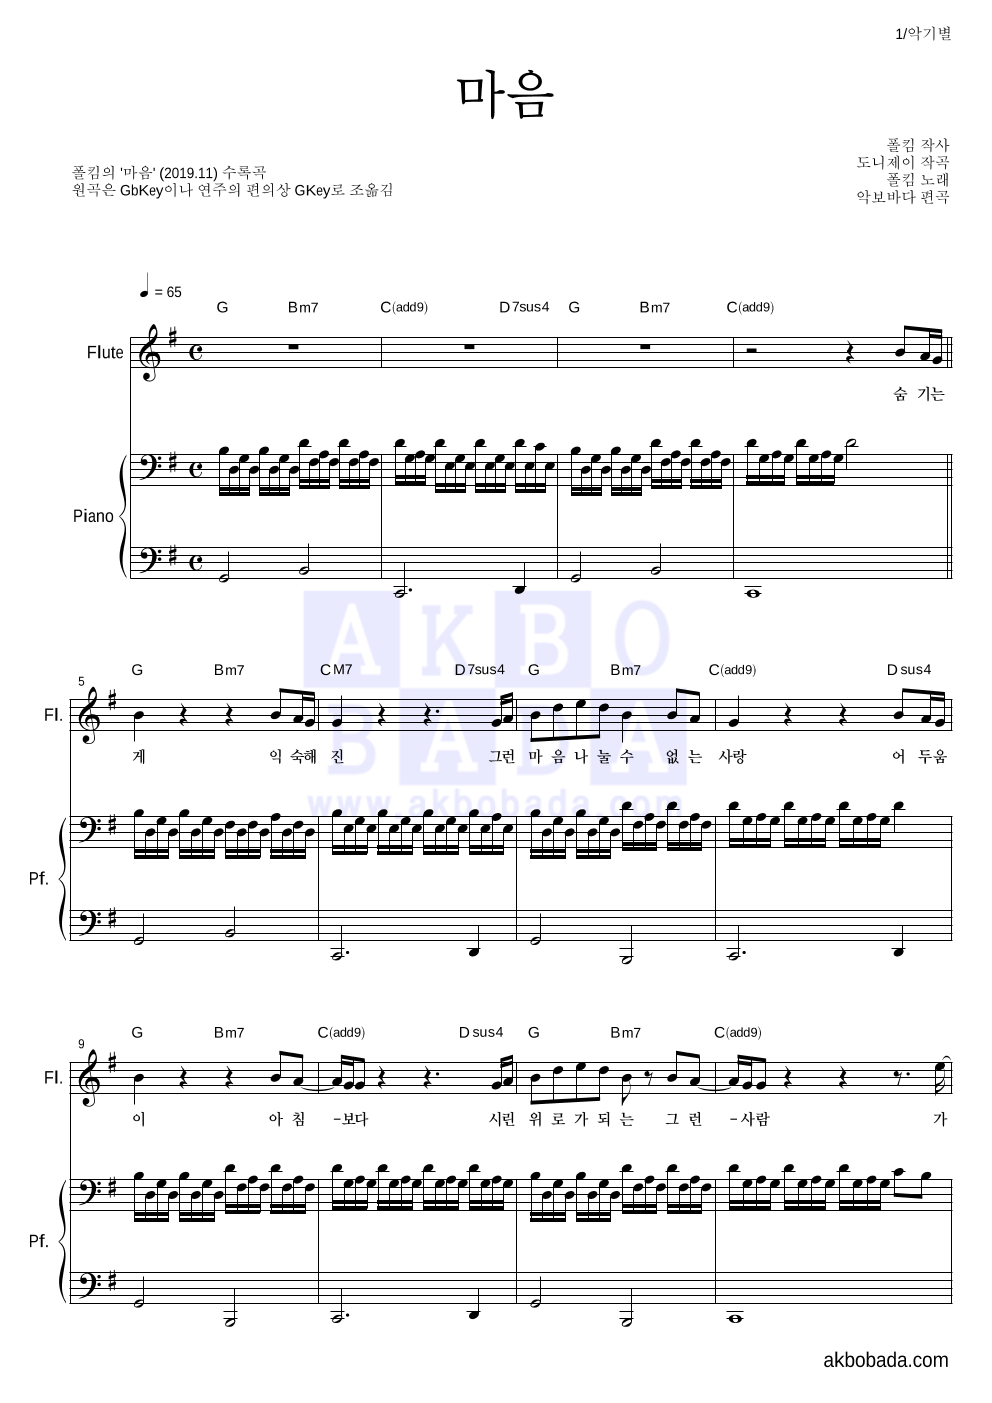 폴킴 - 마음 플룻&피아노 악보 